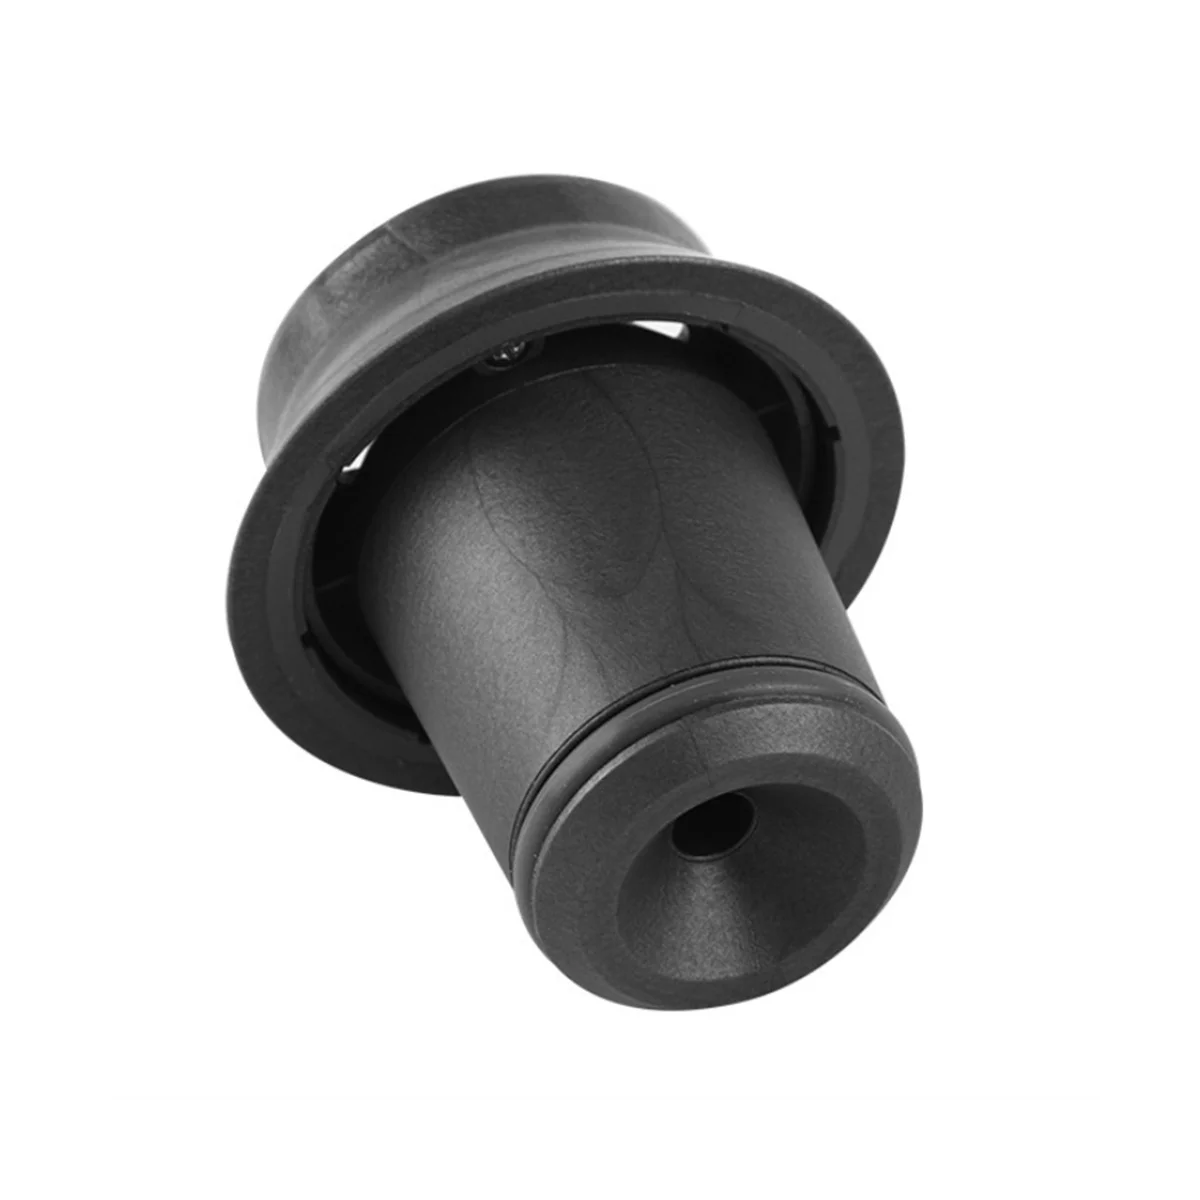 

Suitable for Dyson Hair Dryer Curling Nozzle Anti-Flying Nozzle Hair Dryer Curling Iron Accessories